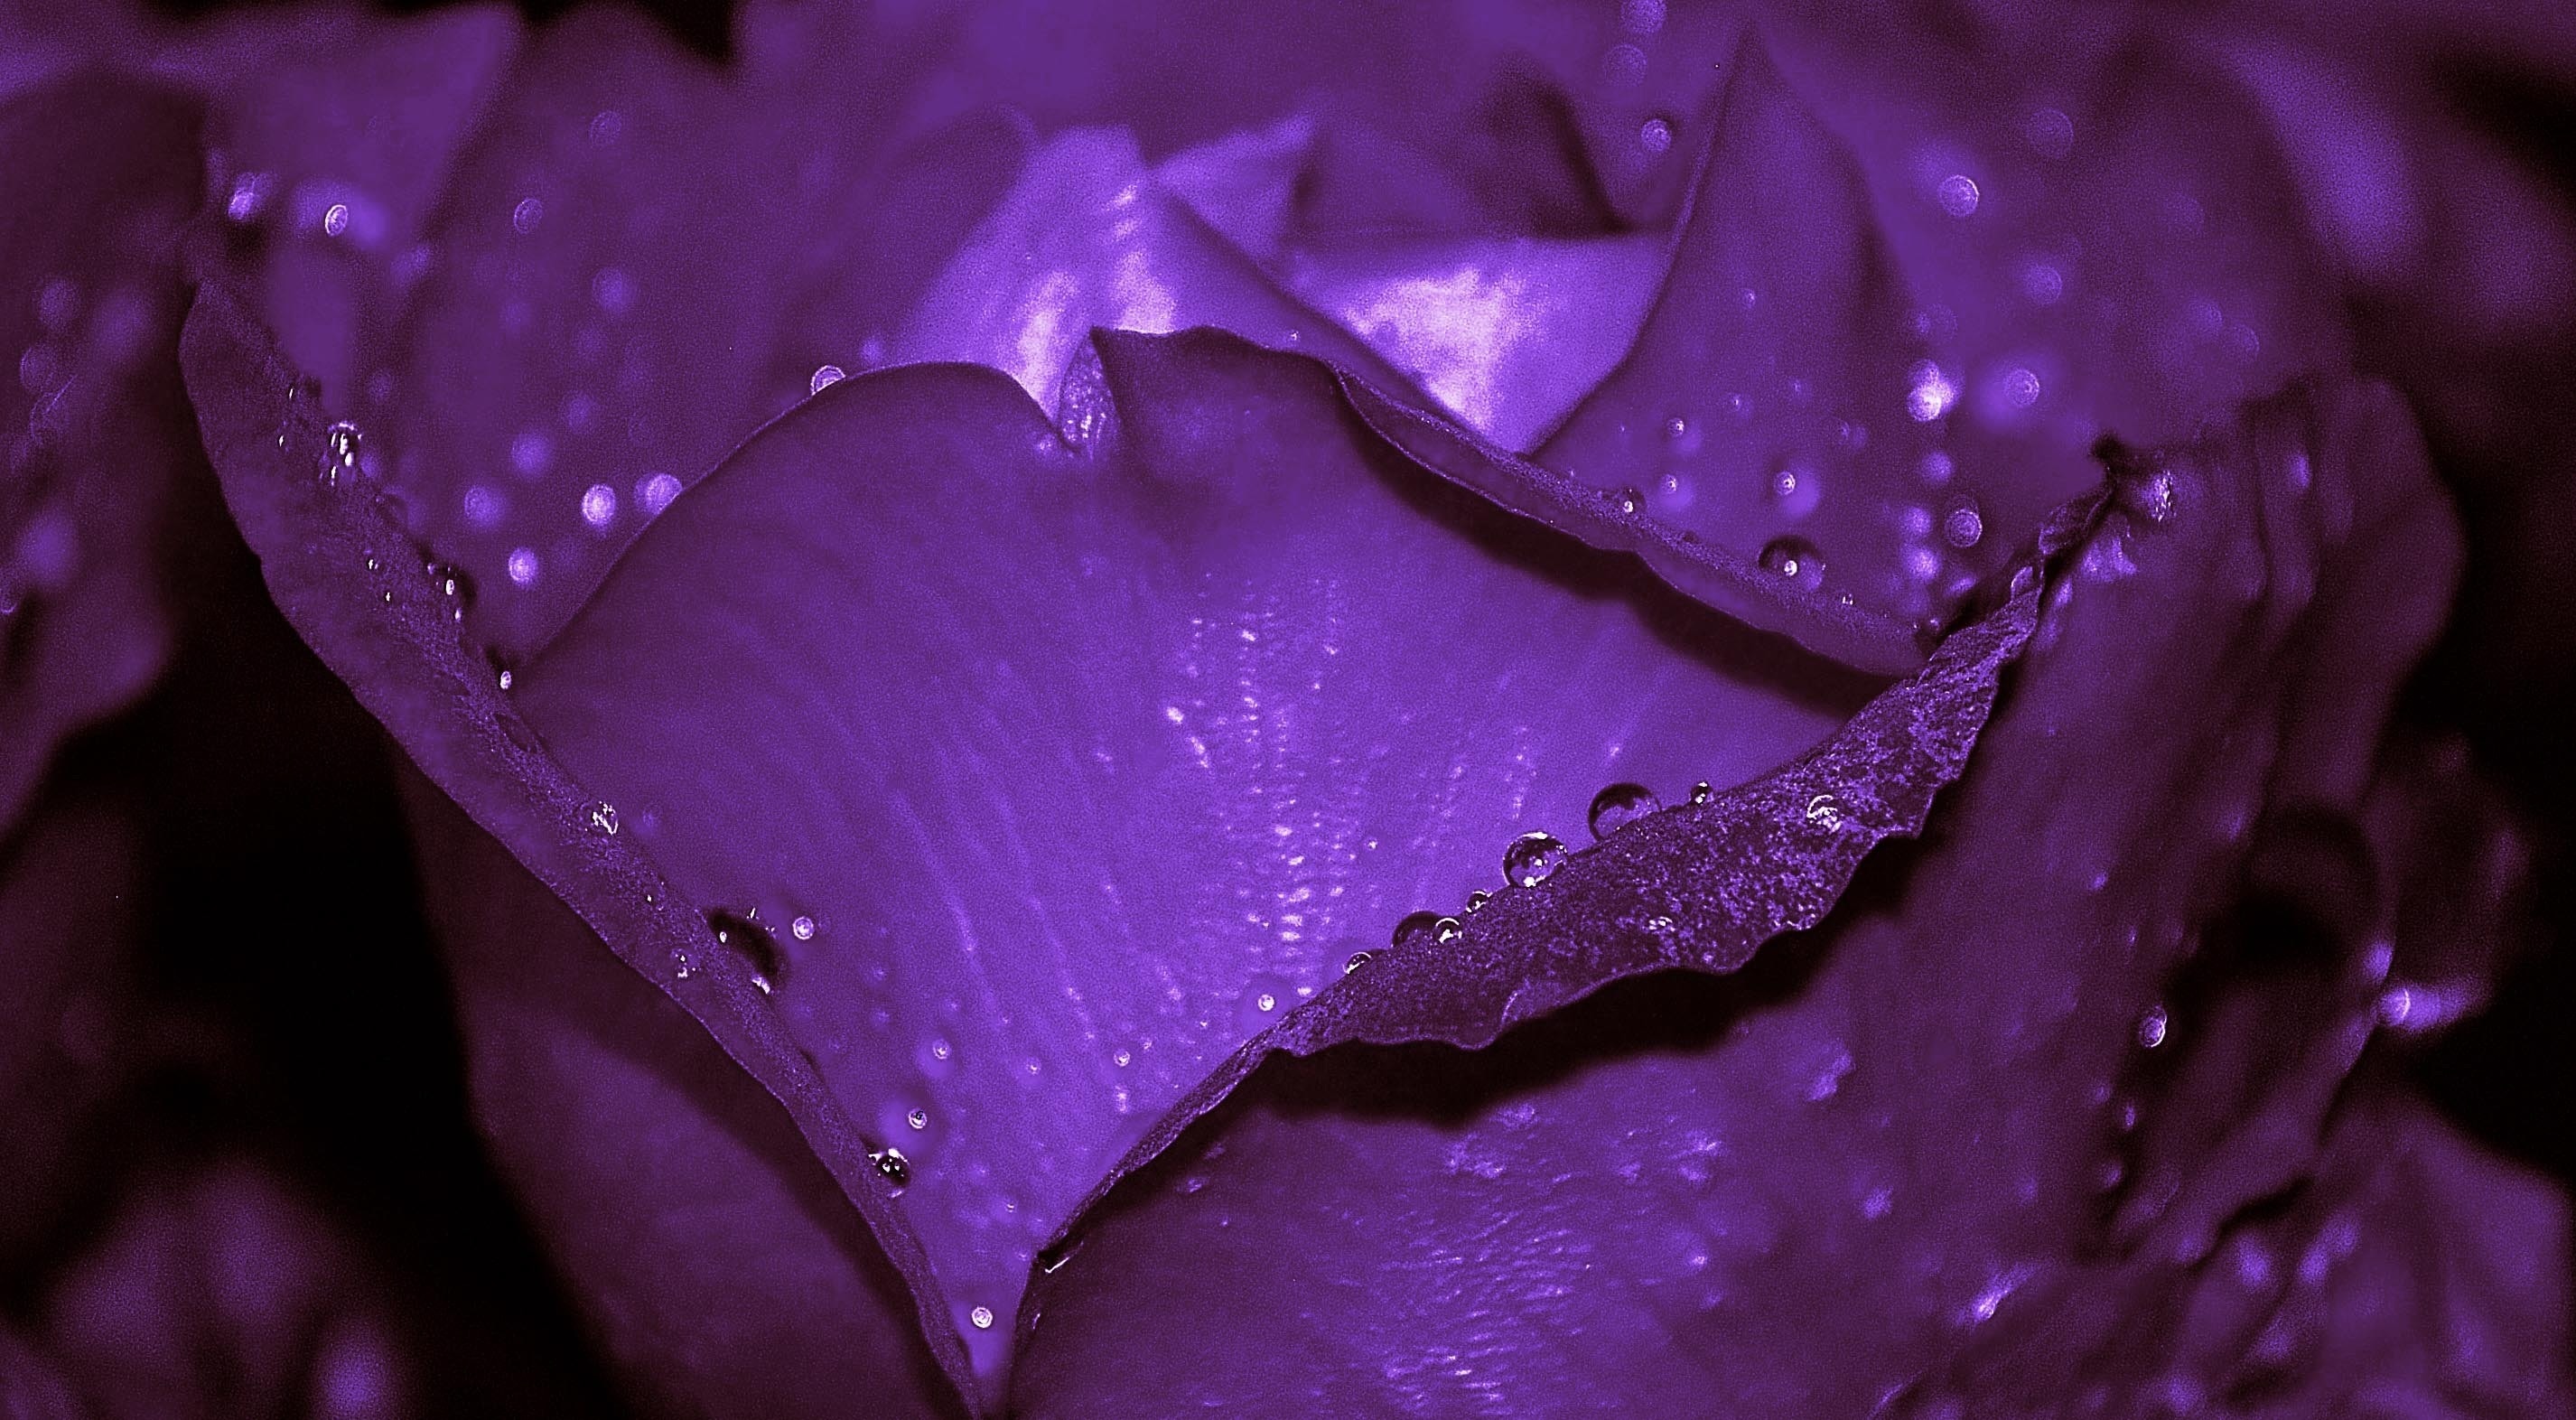 purple ruffled petals